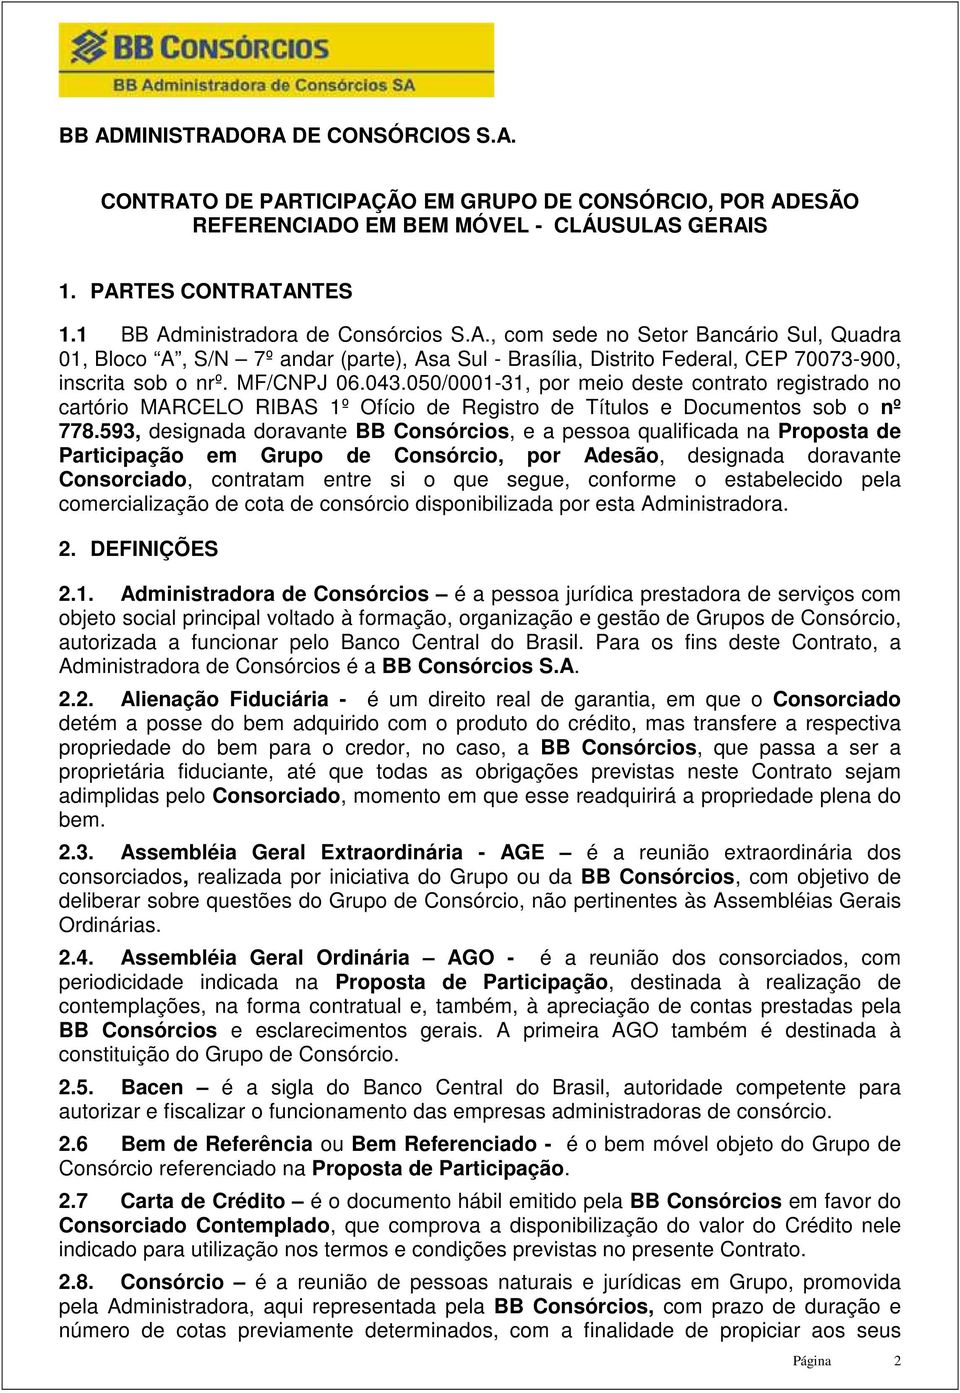 043.050/0001-31, por meio deste contrato registrado no cartório MARCELO RIBAS 1º Ofício de Registro de Títulos e Documentos sob o nº 778.